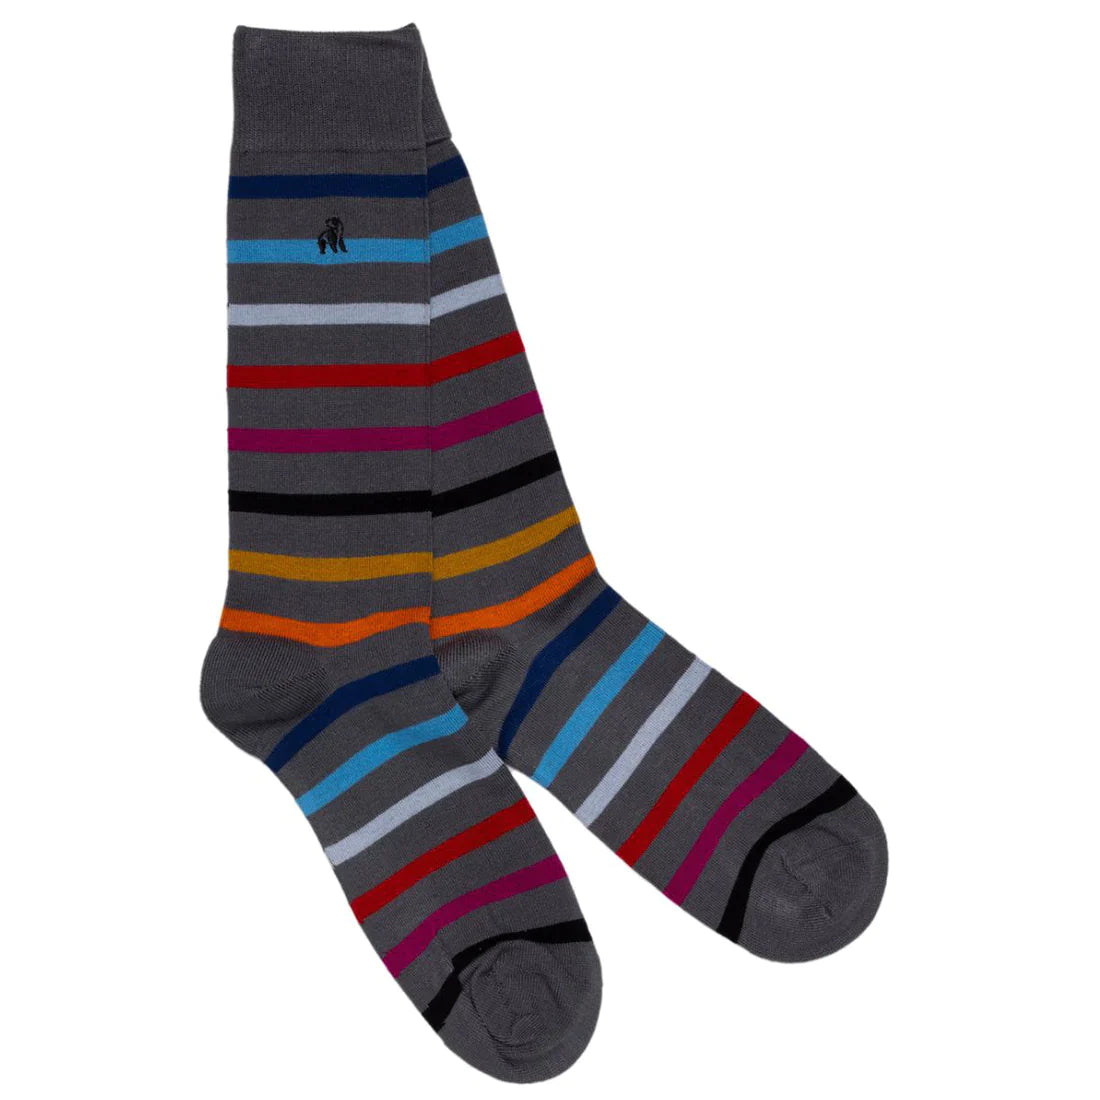 socks-grey-small-striped-bamboo-socks-1_1800x1800_8dbabf8a-1373-4b12-ad51-2b1a23607526.webp